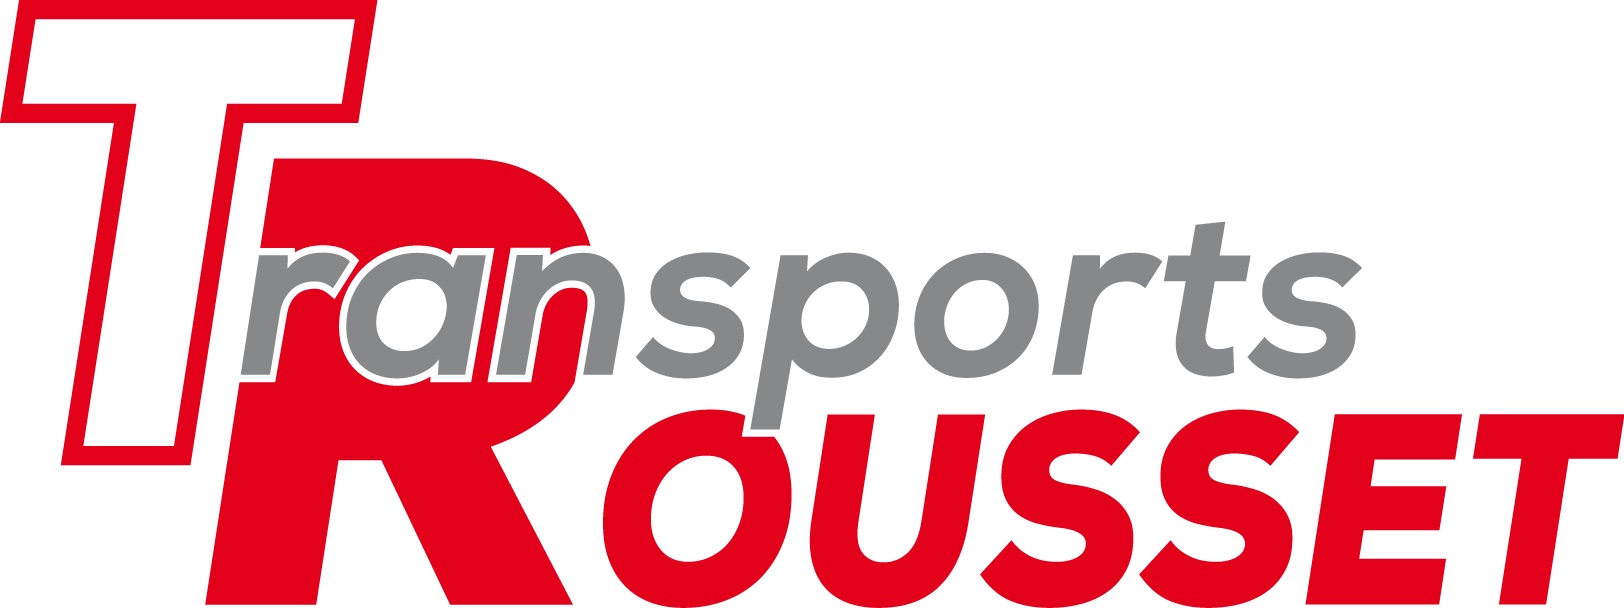 logo_Transports_ROUSSET